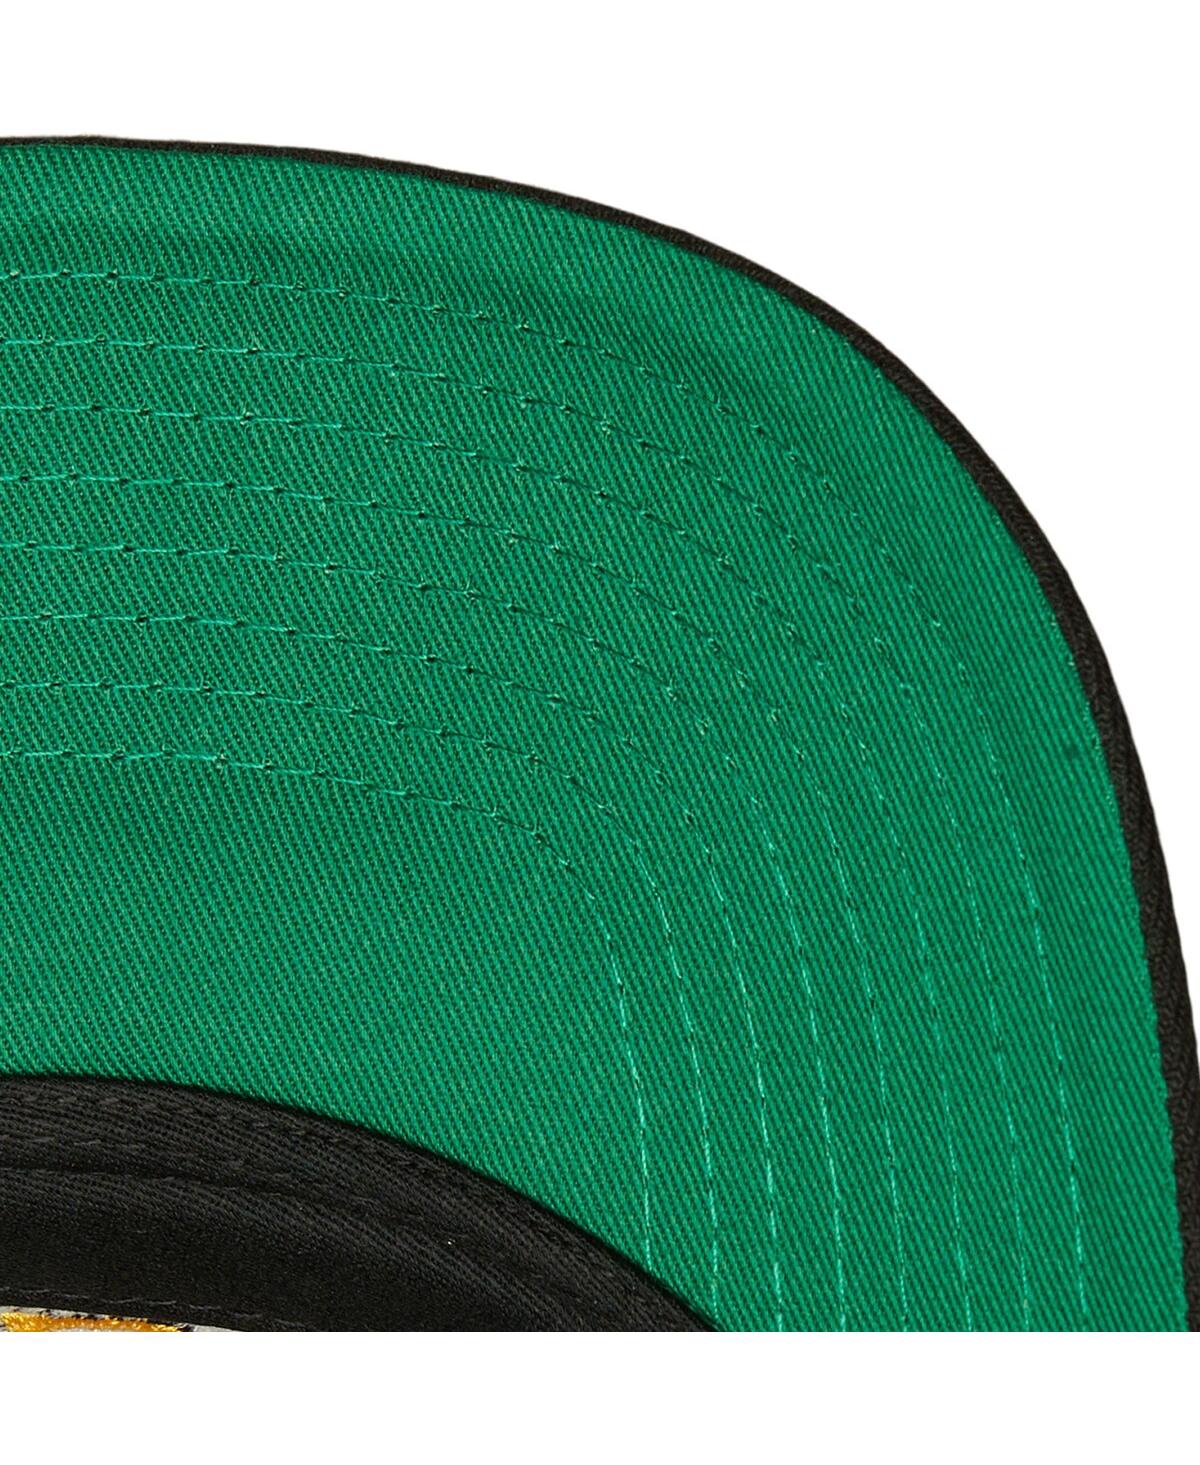 Shop Mitchell & Ness Men's  Black Boston Bruins Team Ground Pro Adjustable Hat